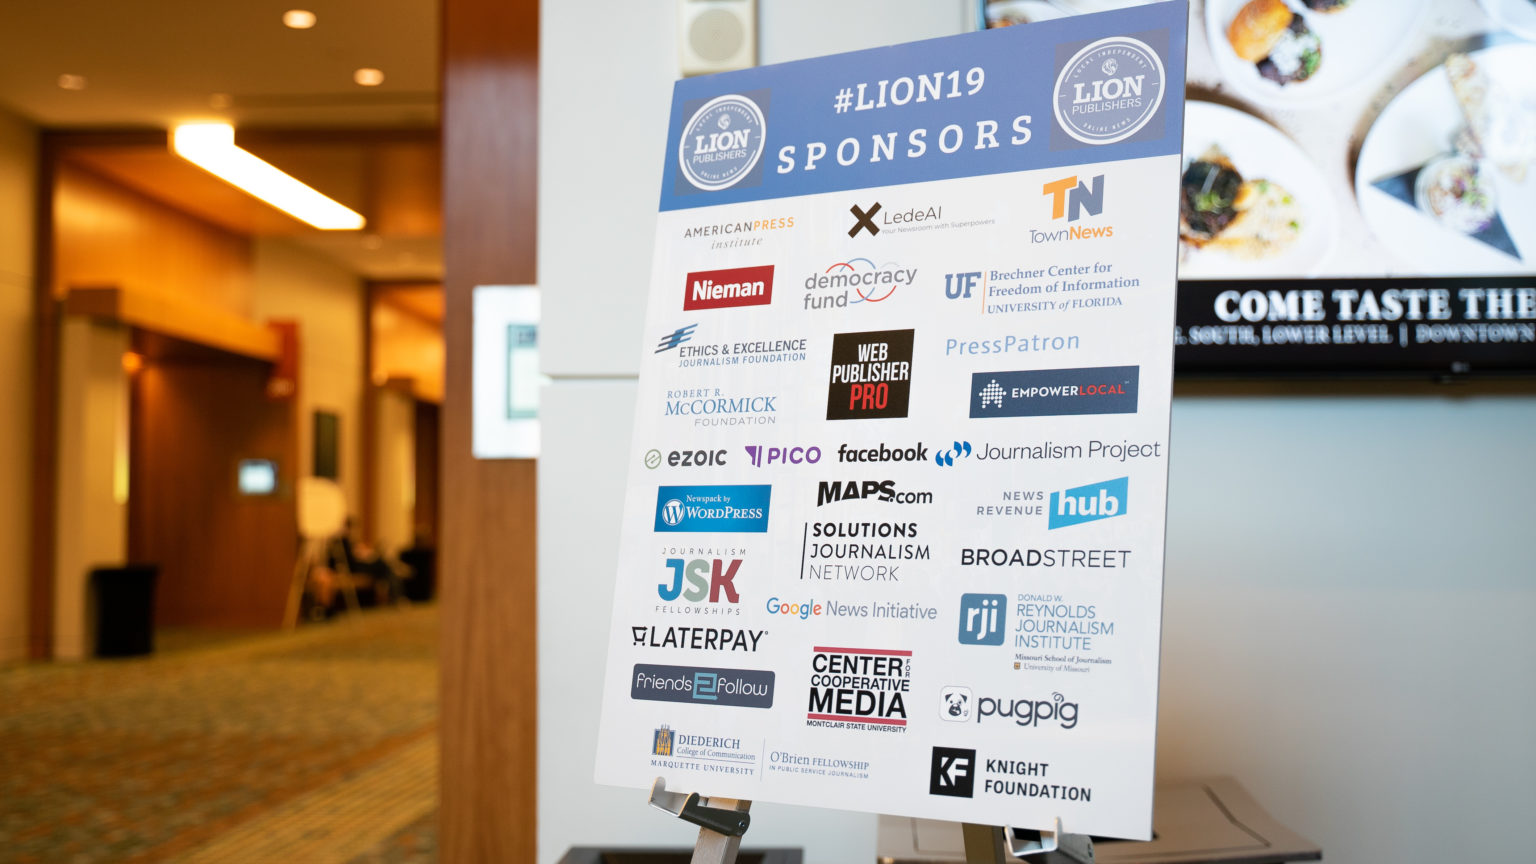 Sponsorship signage at 2019 LION conference